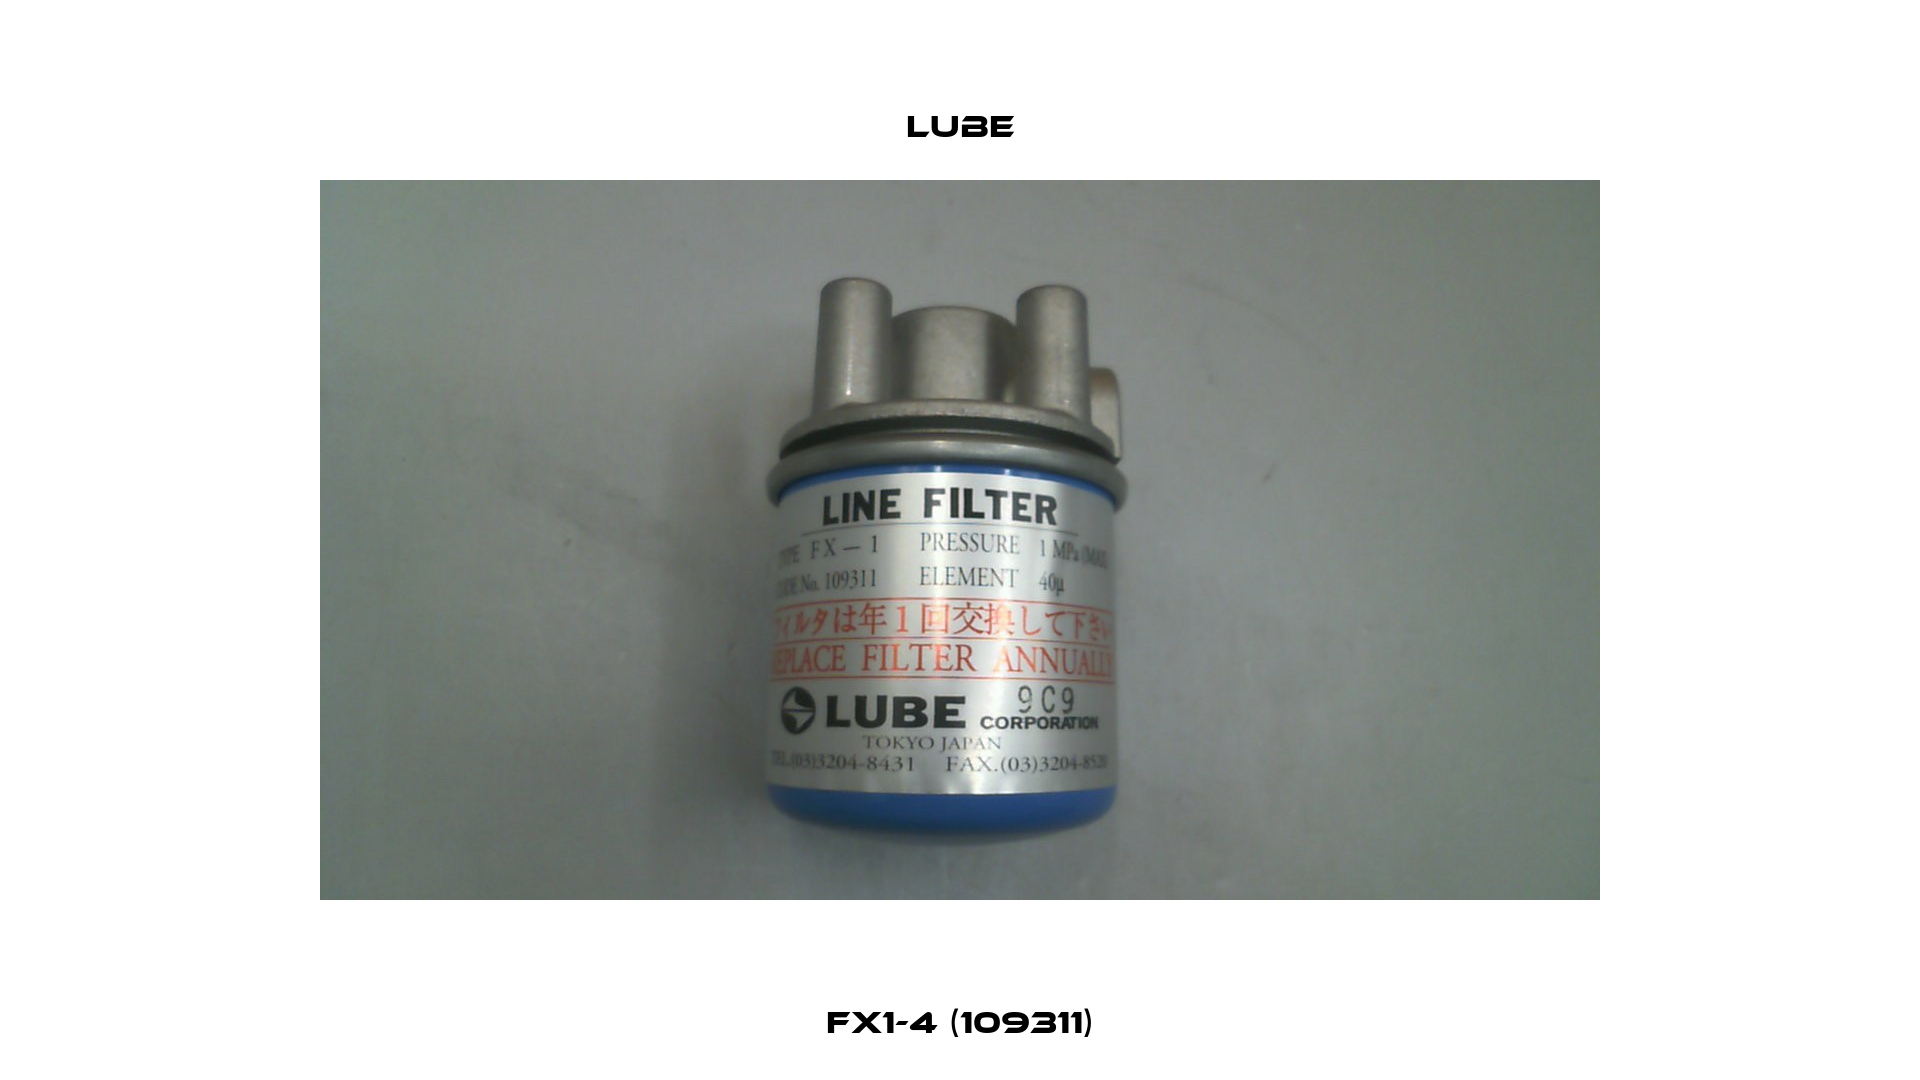 FX1-4 (109311) Lube